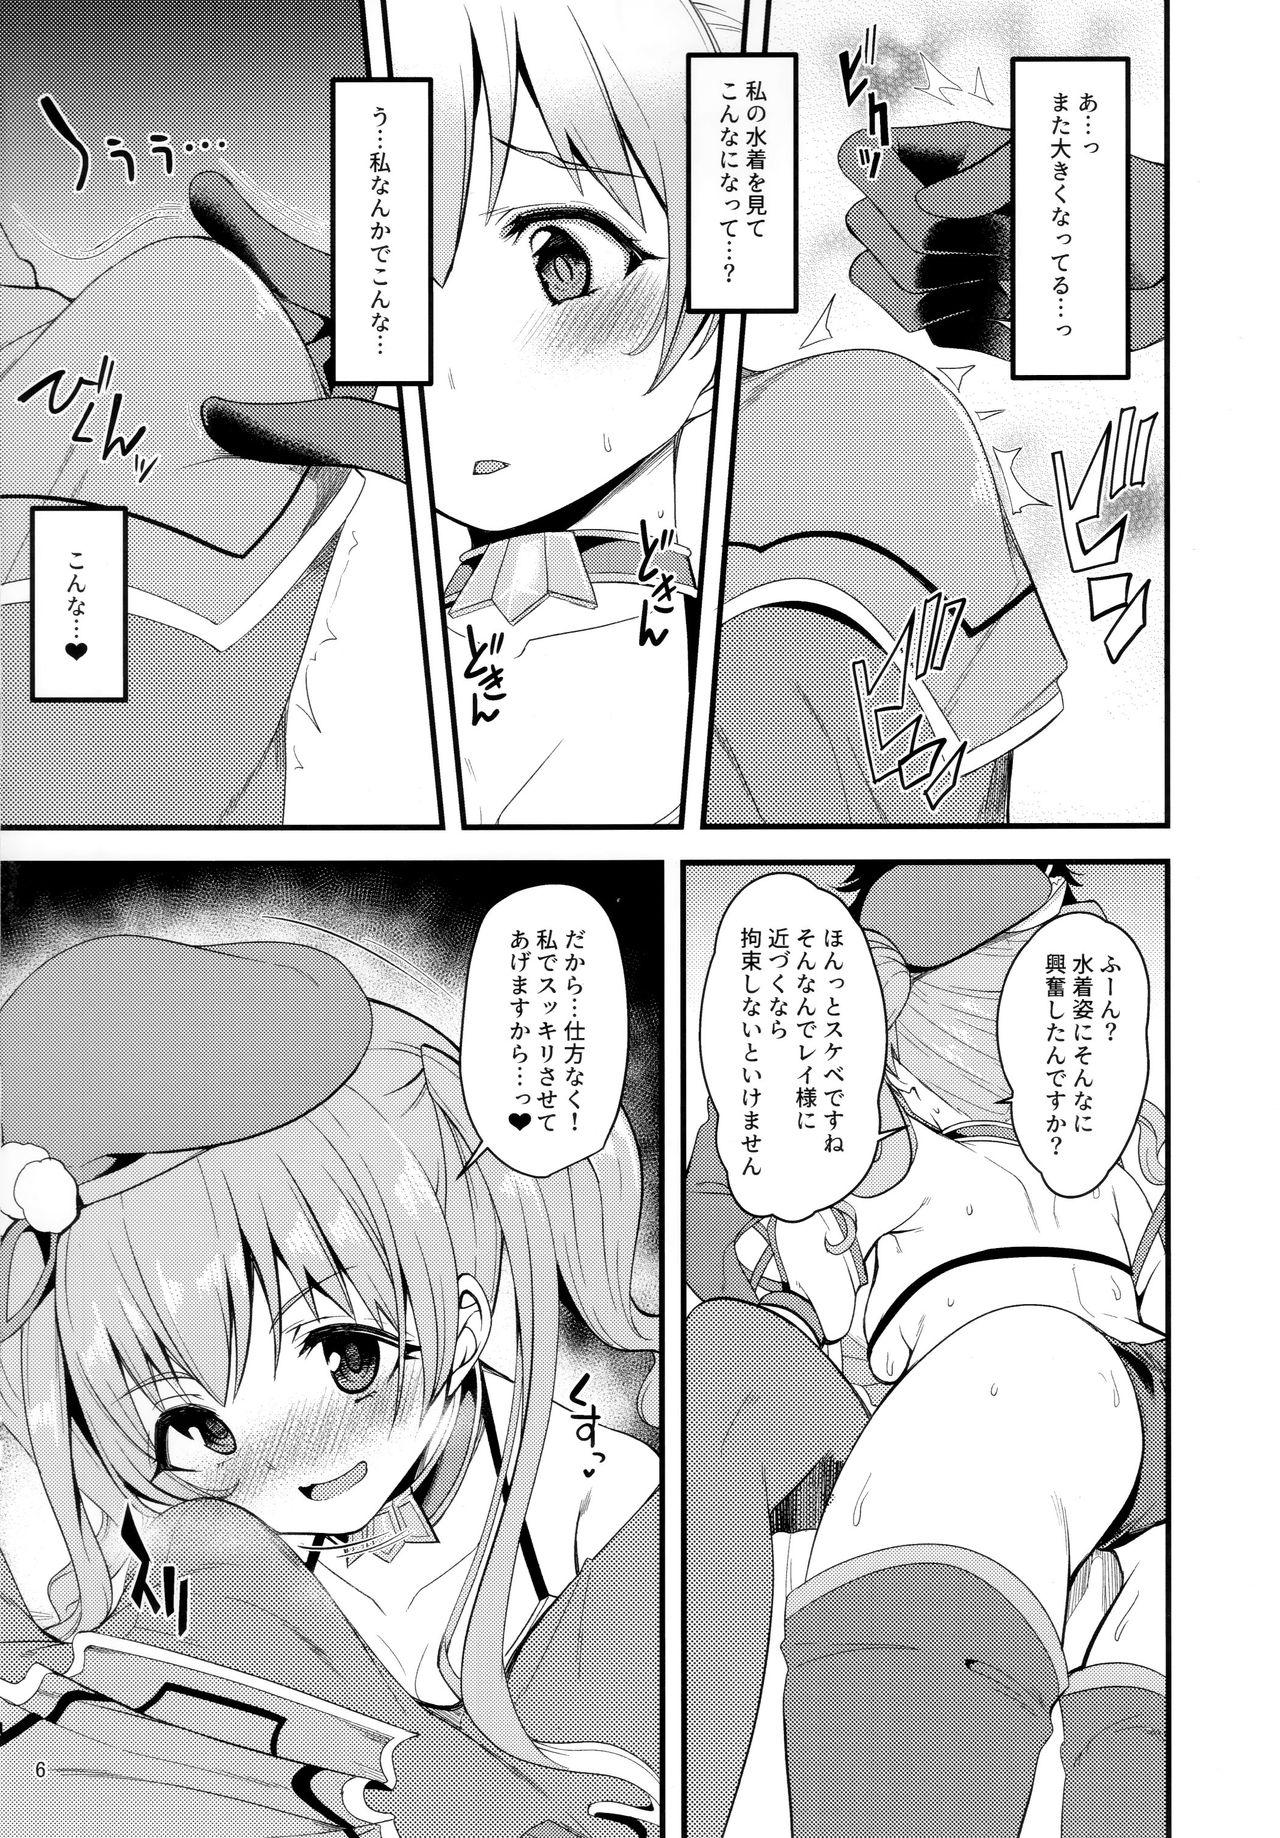 Tesao Tsumugi Make Heroine Move!! 02 - Princess connect Caught - Page 5